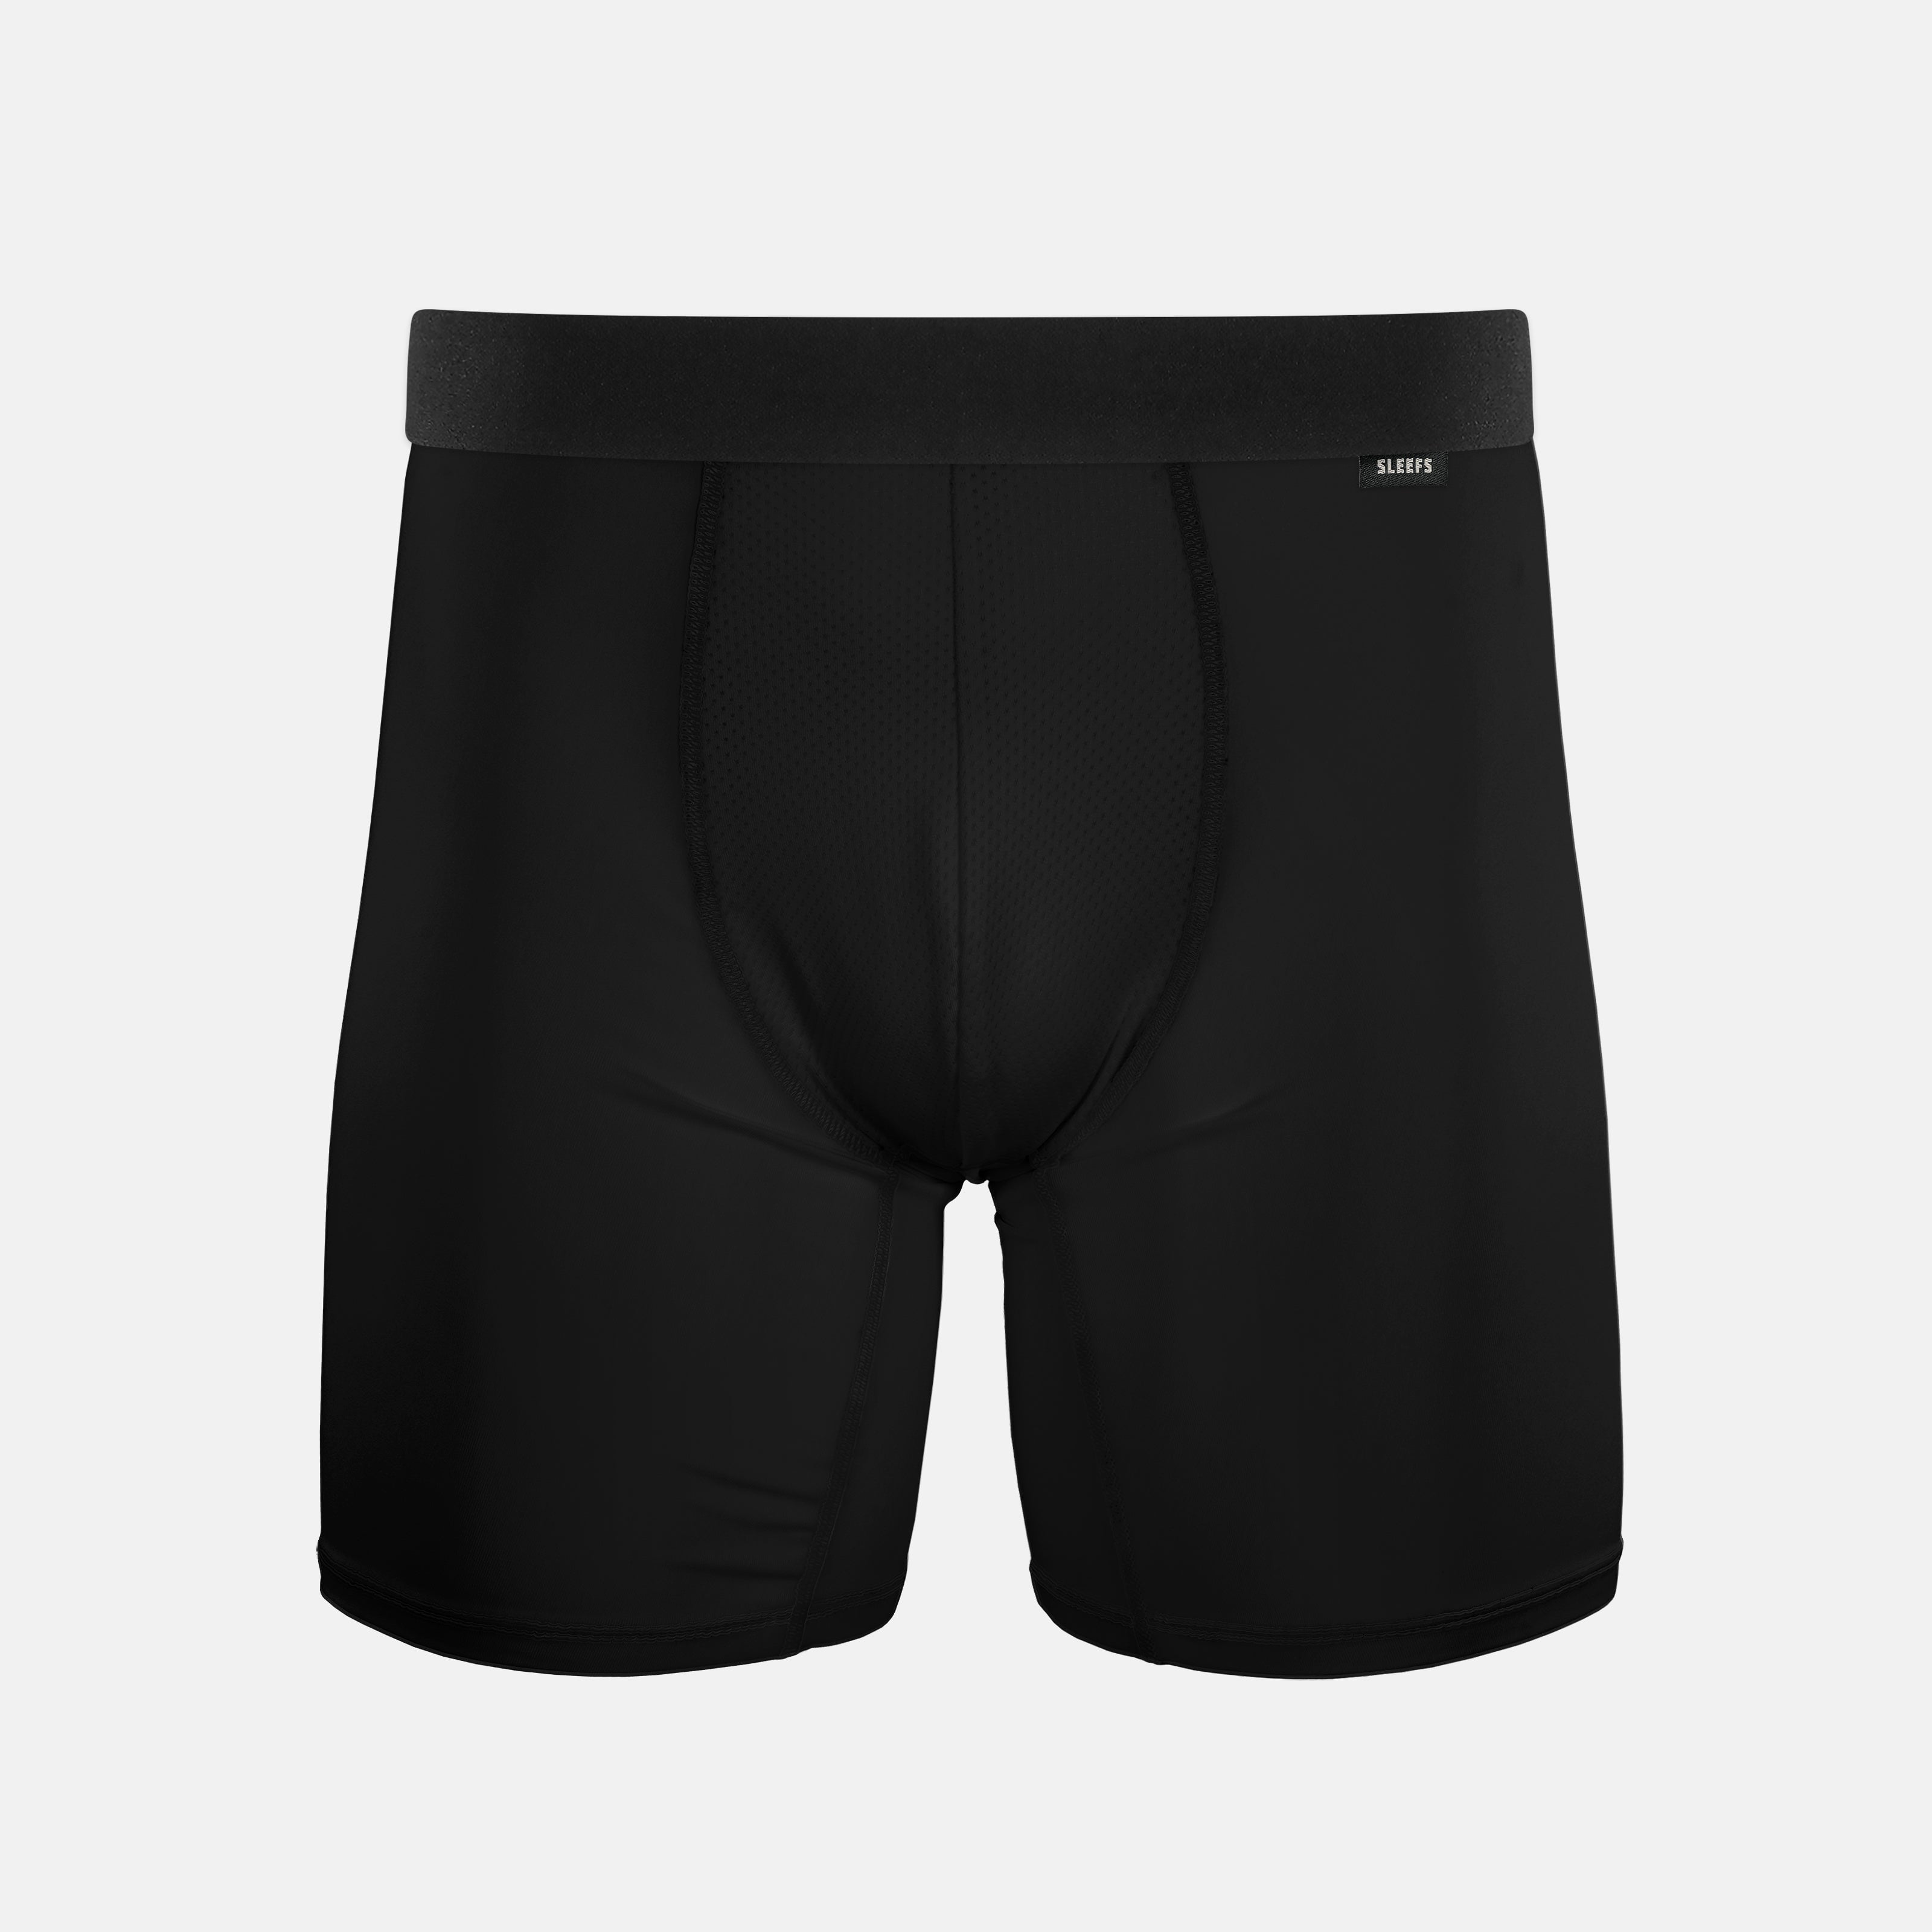 Basic Black Men's Underwear - Walmart.com